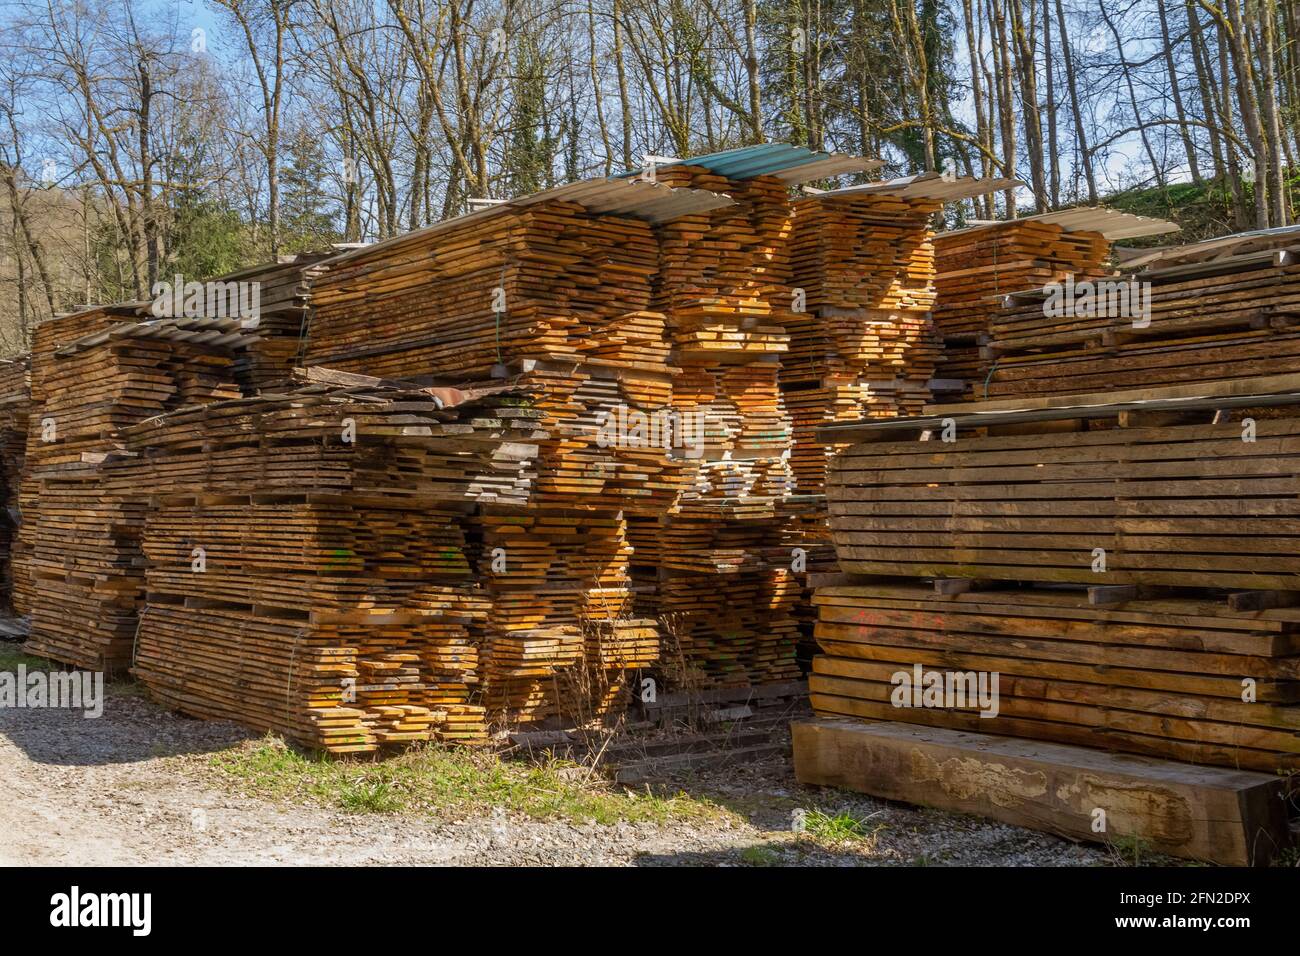 Viele gestapelte Holzbretter auf einem Holzhof Sonniges Ambiente Stockfoto